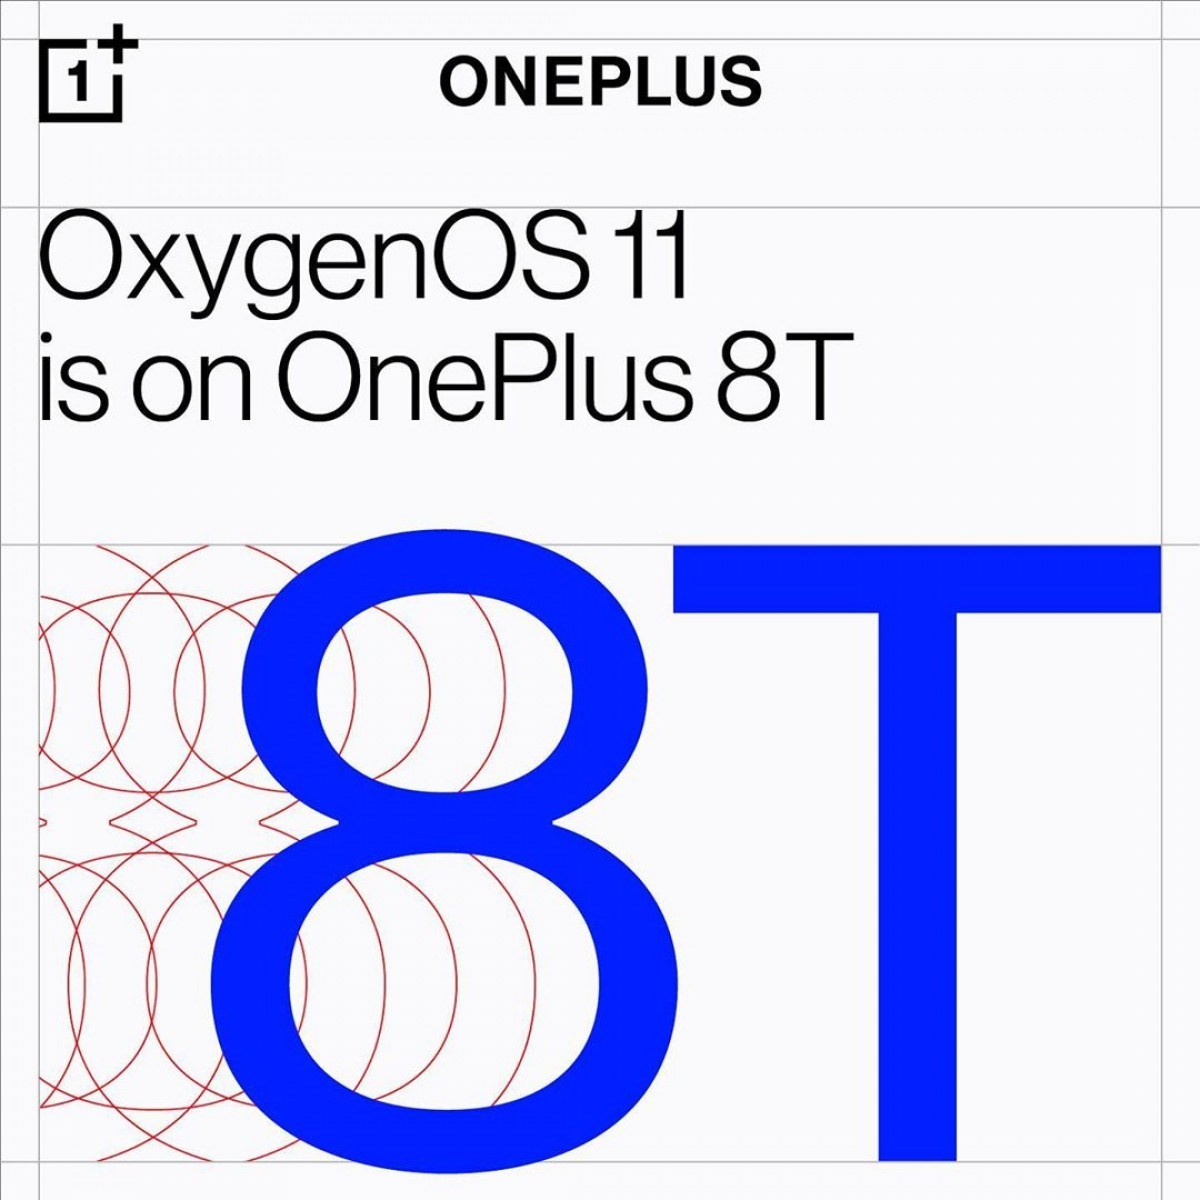 海外版一加8t 将搭载氧os 11 系统 手机新浪网